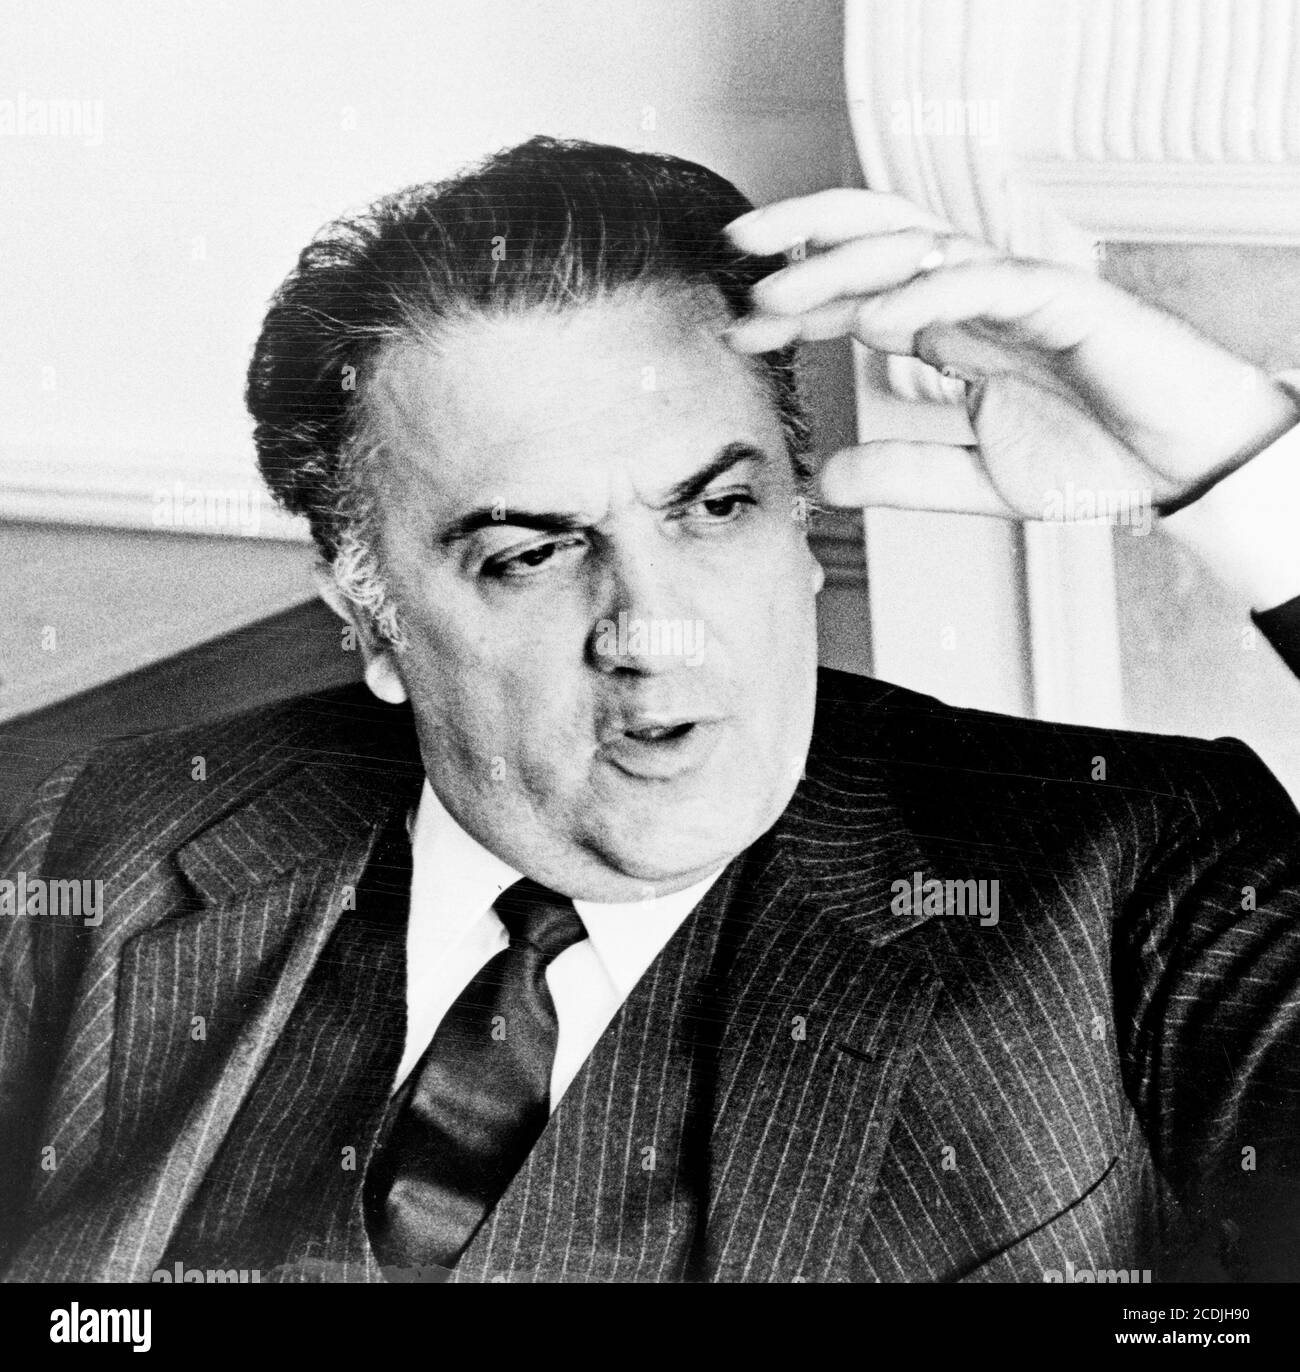 Federico Fellini. Retrato del director de cine italiano Federico Fellini (1920-1993) de Walter Albertin, c.1965 Foto de stock